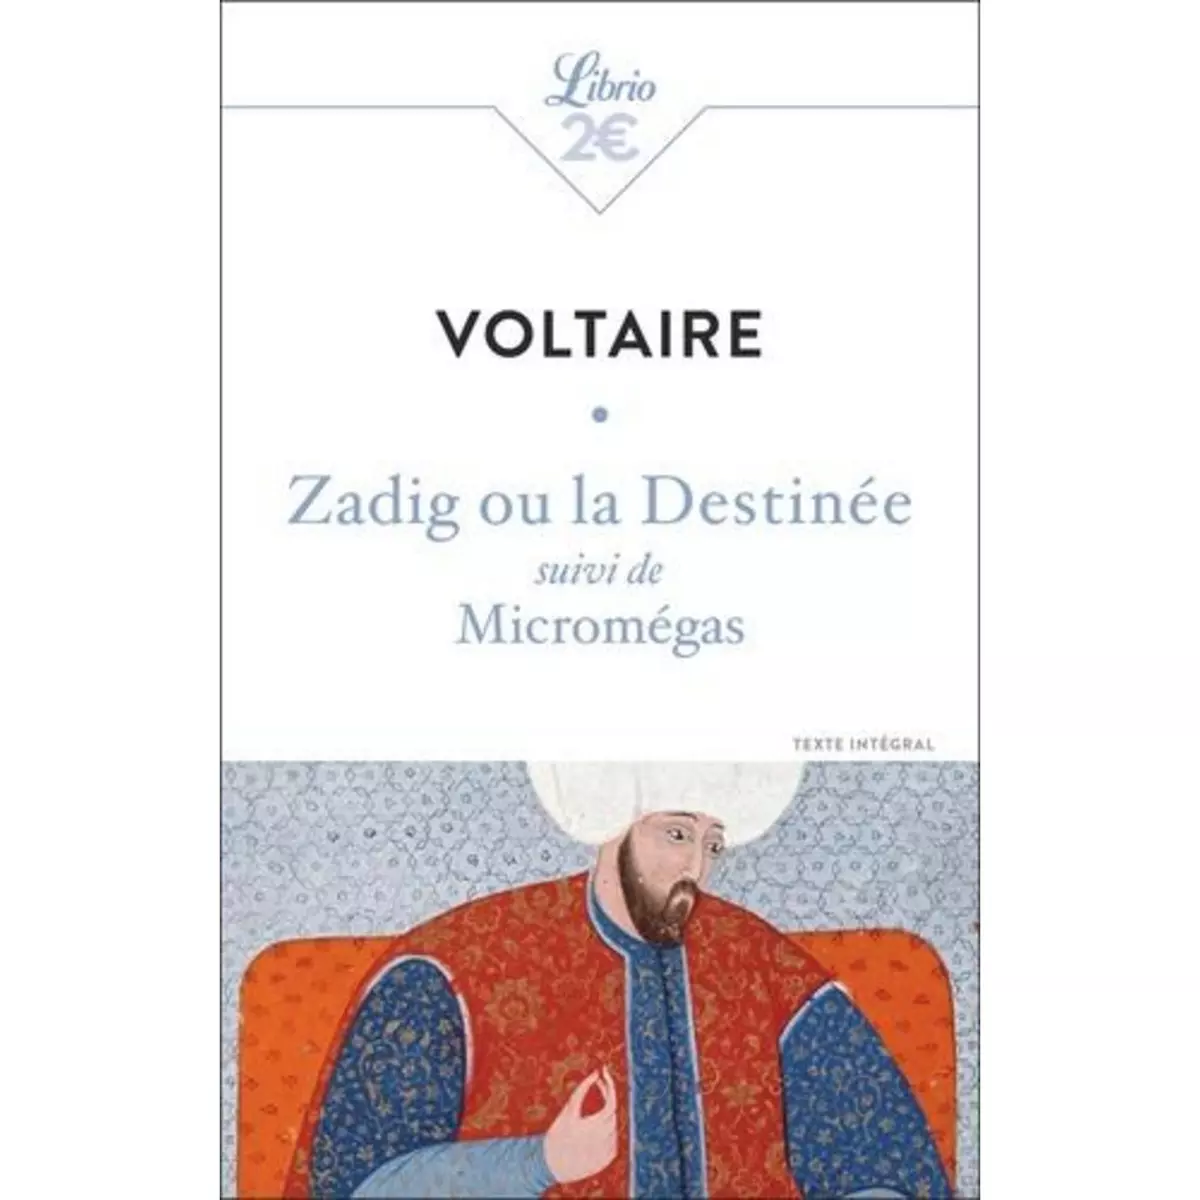  ZADIG OU LA DESTINEE. SUIVI DE MICROMEGAS, Voltaire